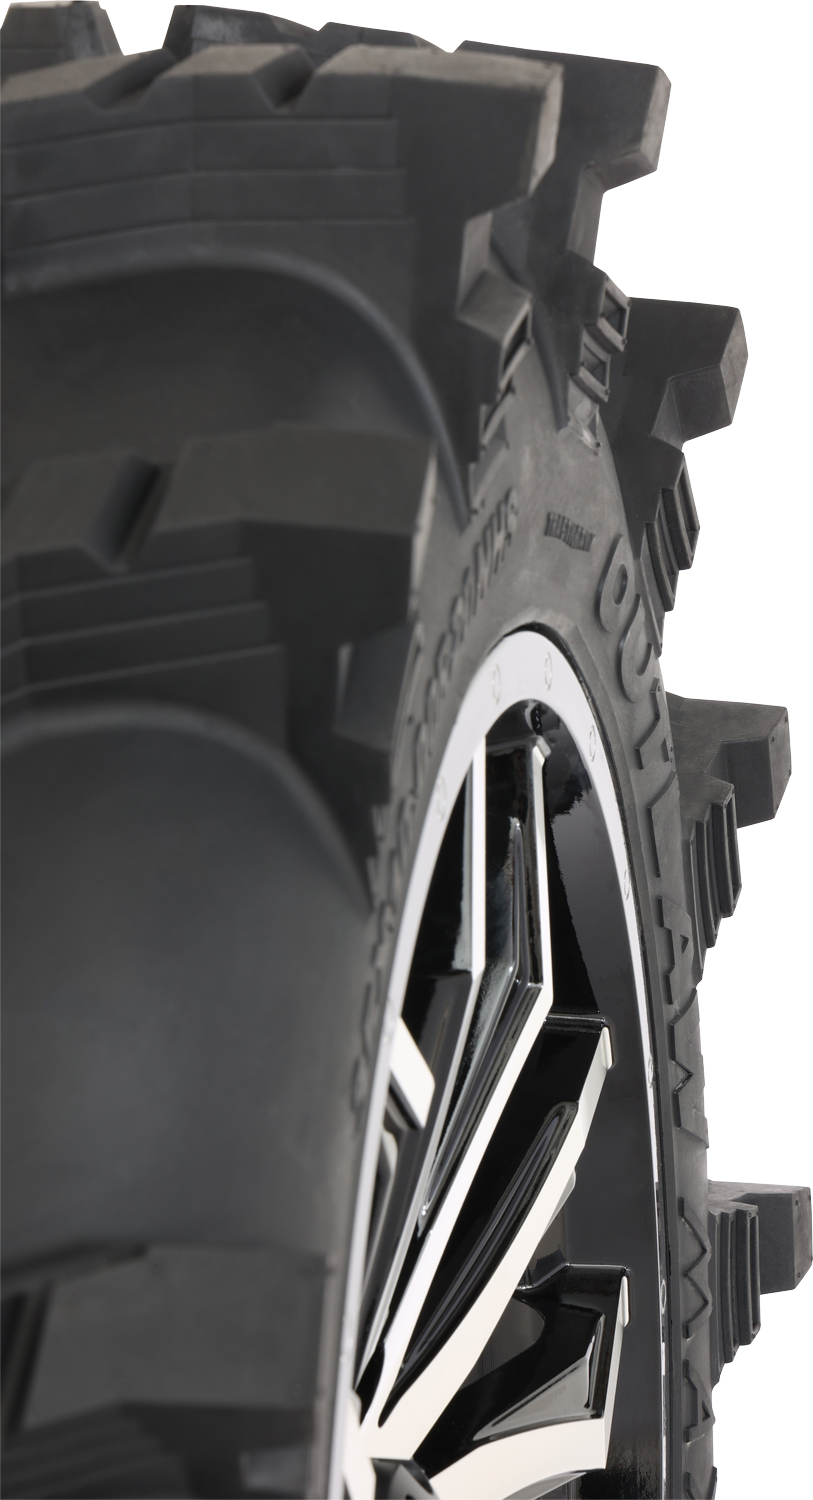 Neumático HIGH LIFTER - Outlaw Max - Delantero/Trasero - 32x10R14 - 8 capas 001-2329HL